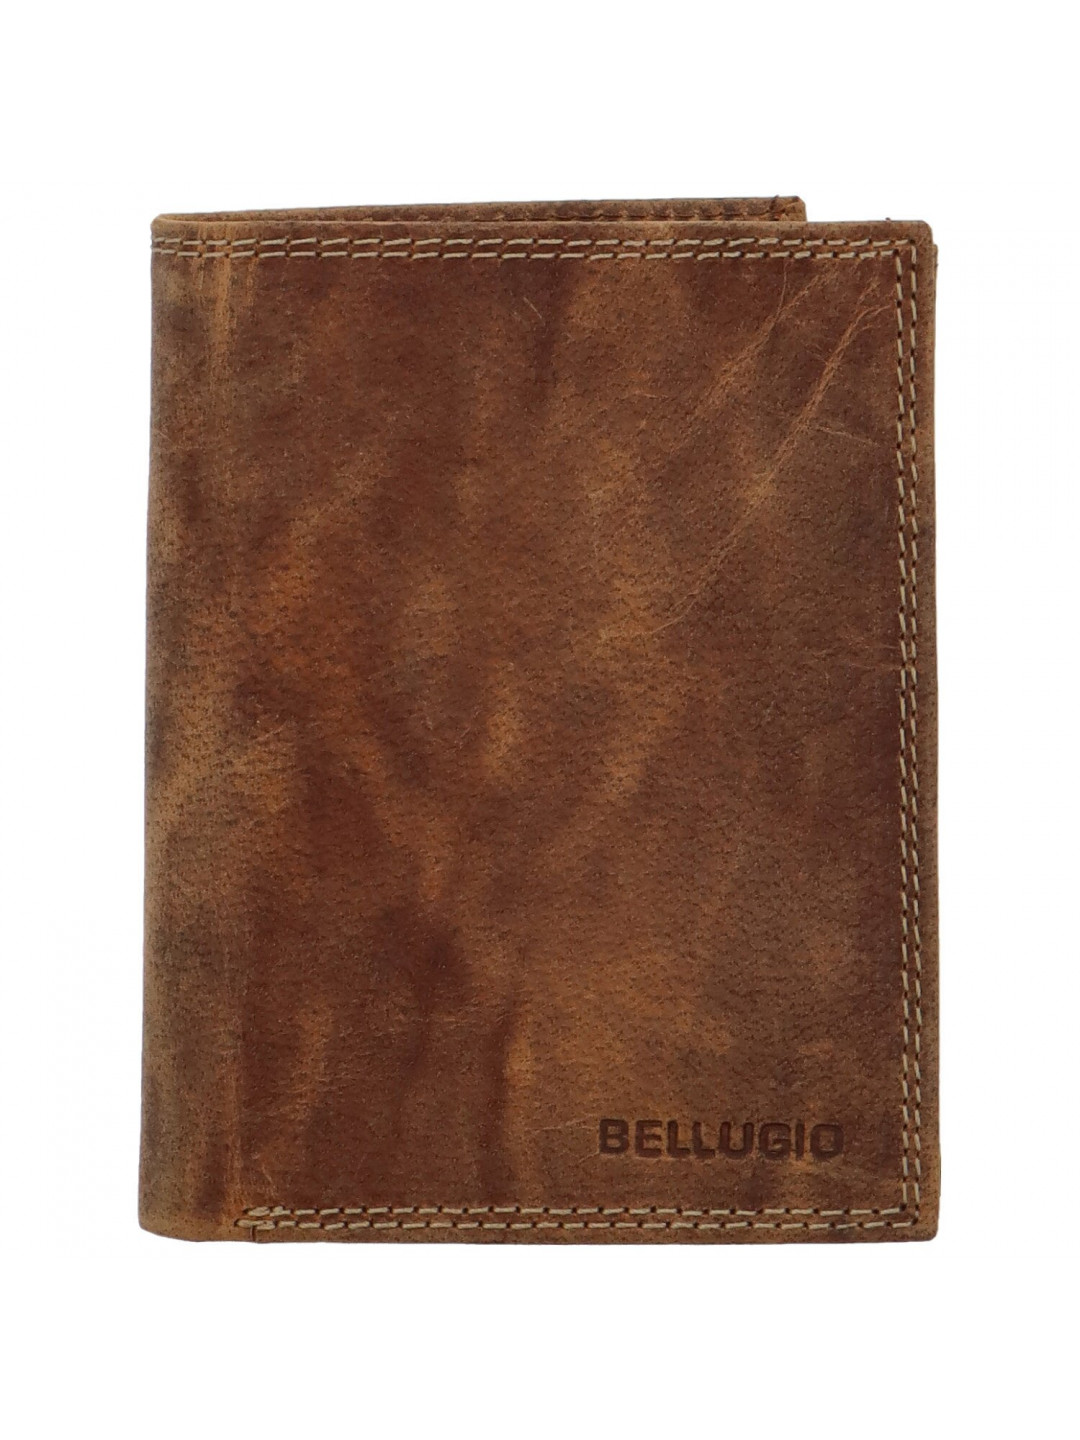 Pánská kožená peněženka na výšku Bellugio Malcomi světle hnědá